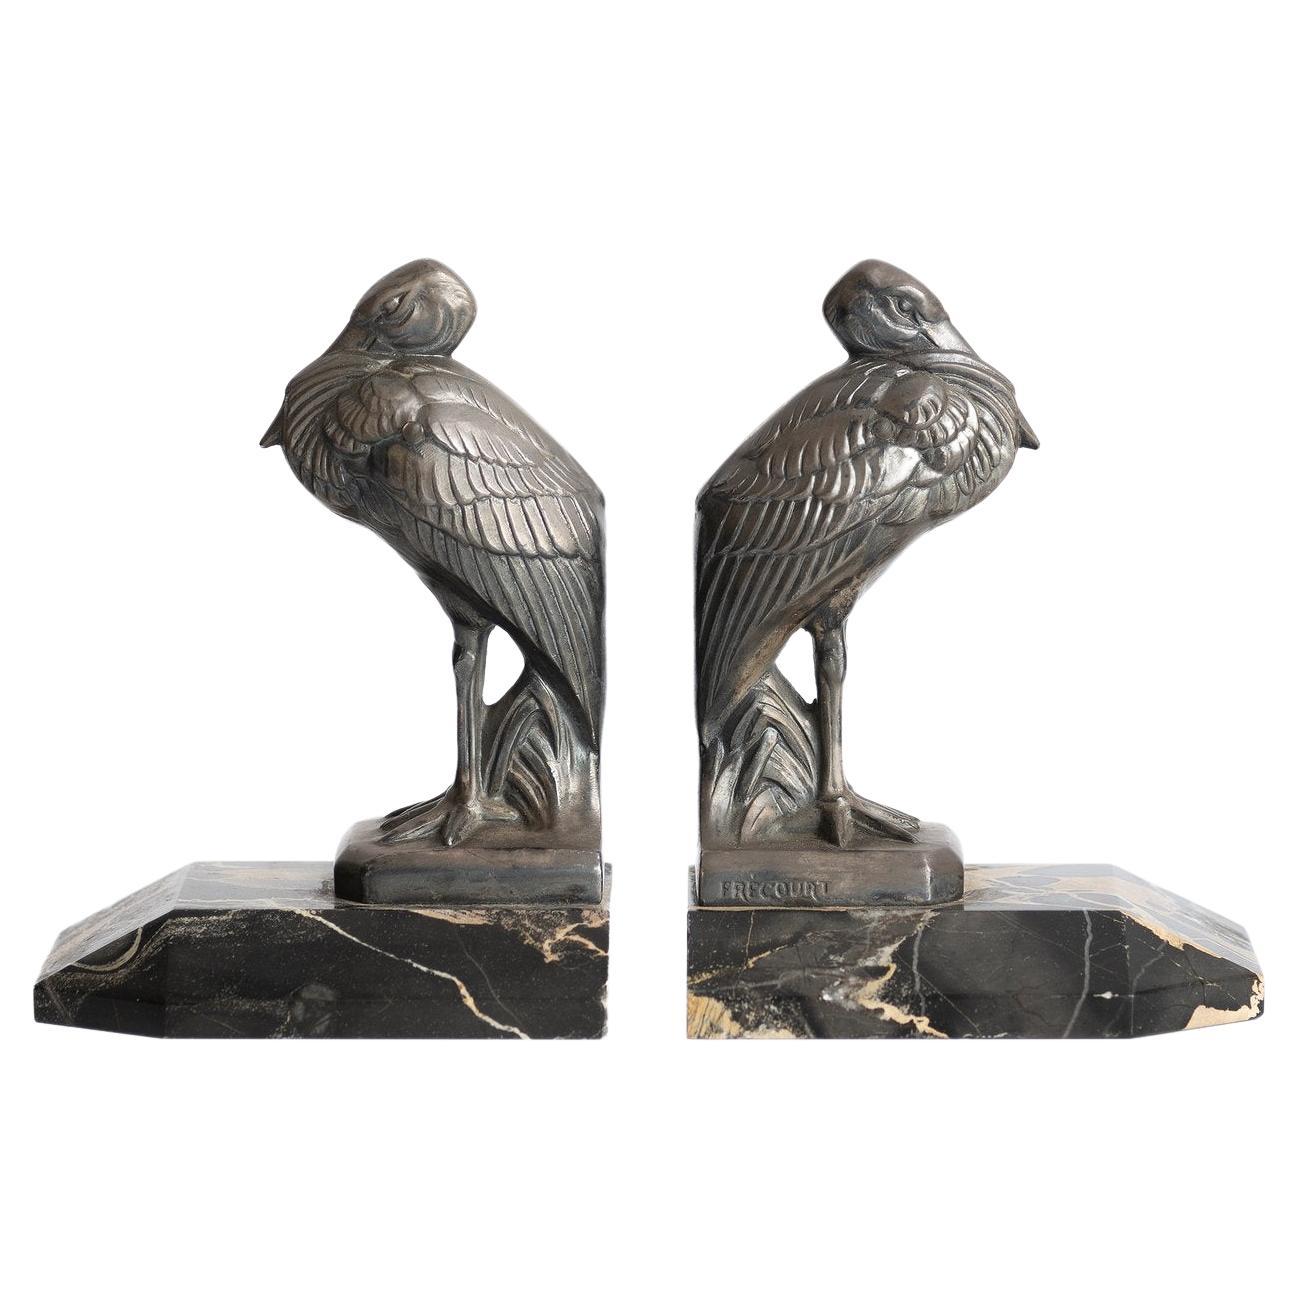 Antique Art Deco ''Heron'' Bookends by Maurice Frecourt 1930 France Art Nouveau For Sale